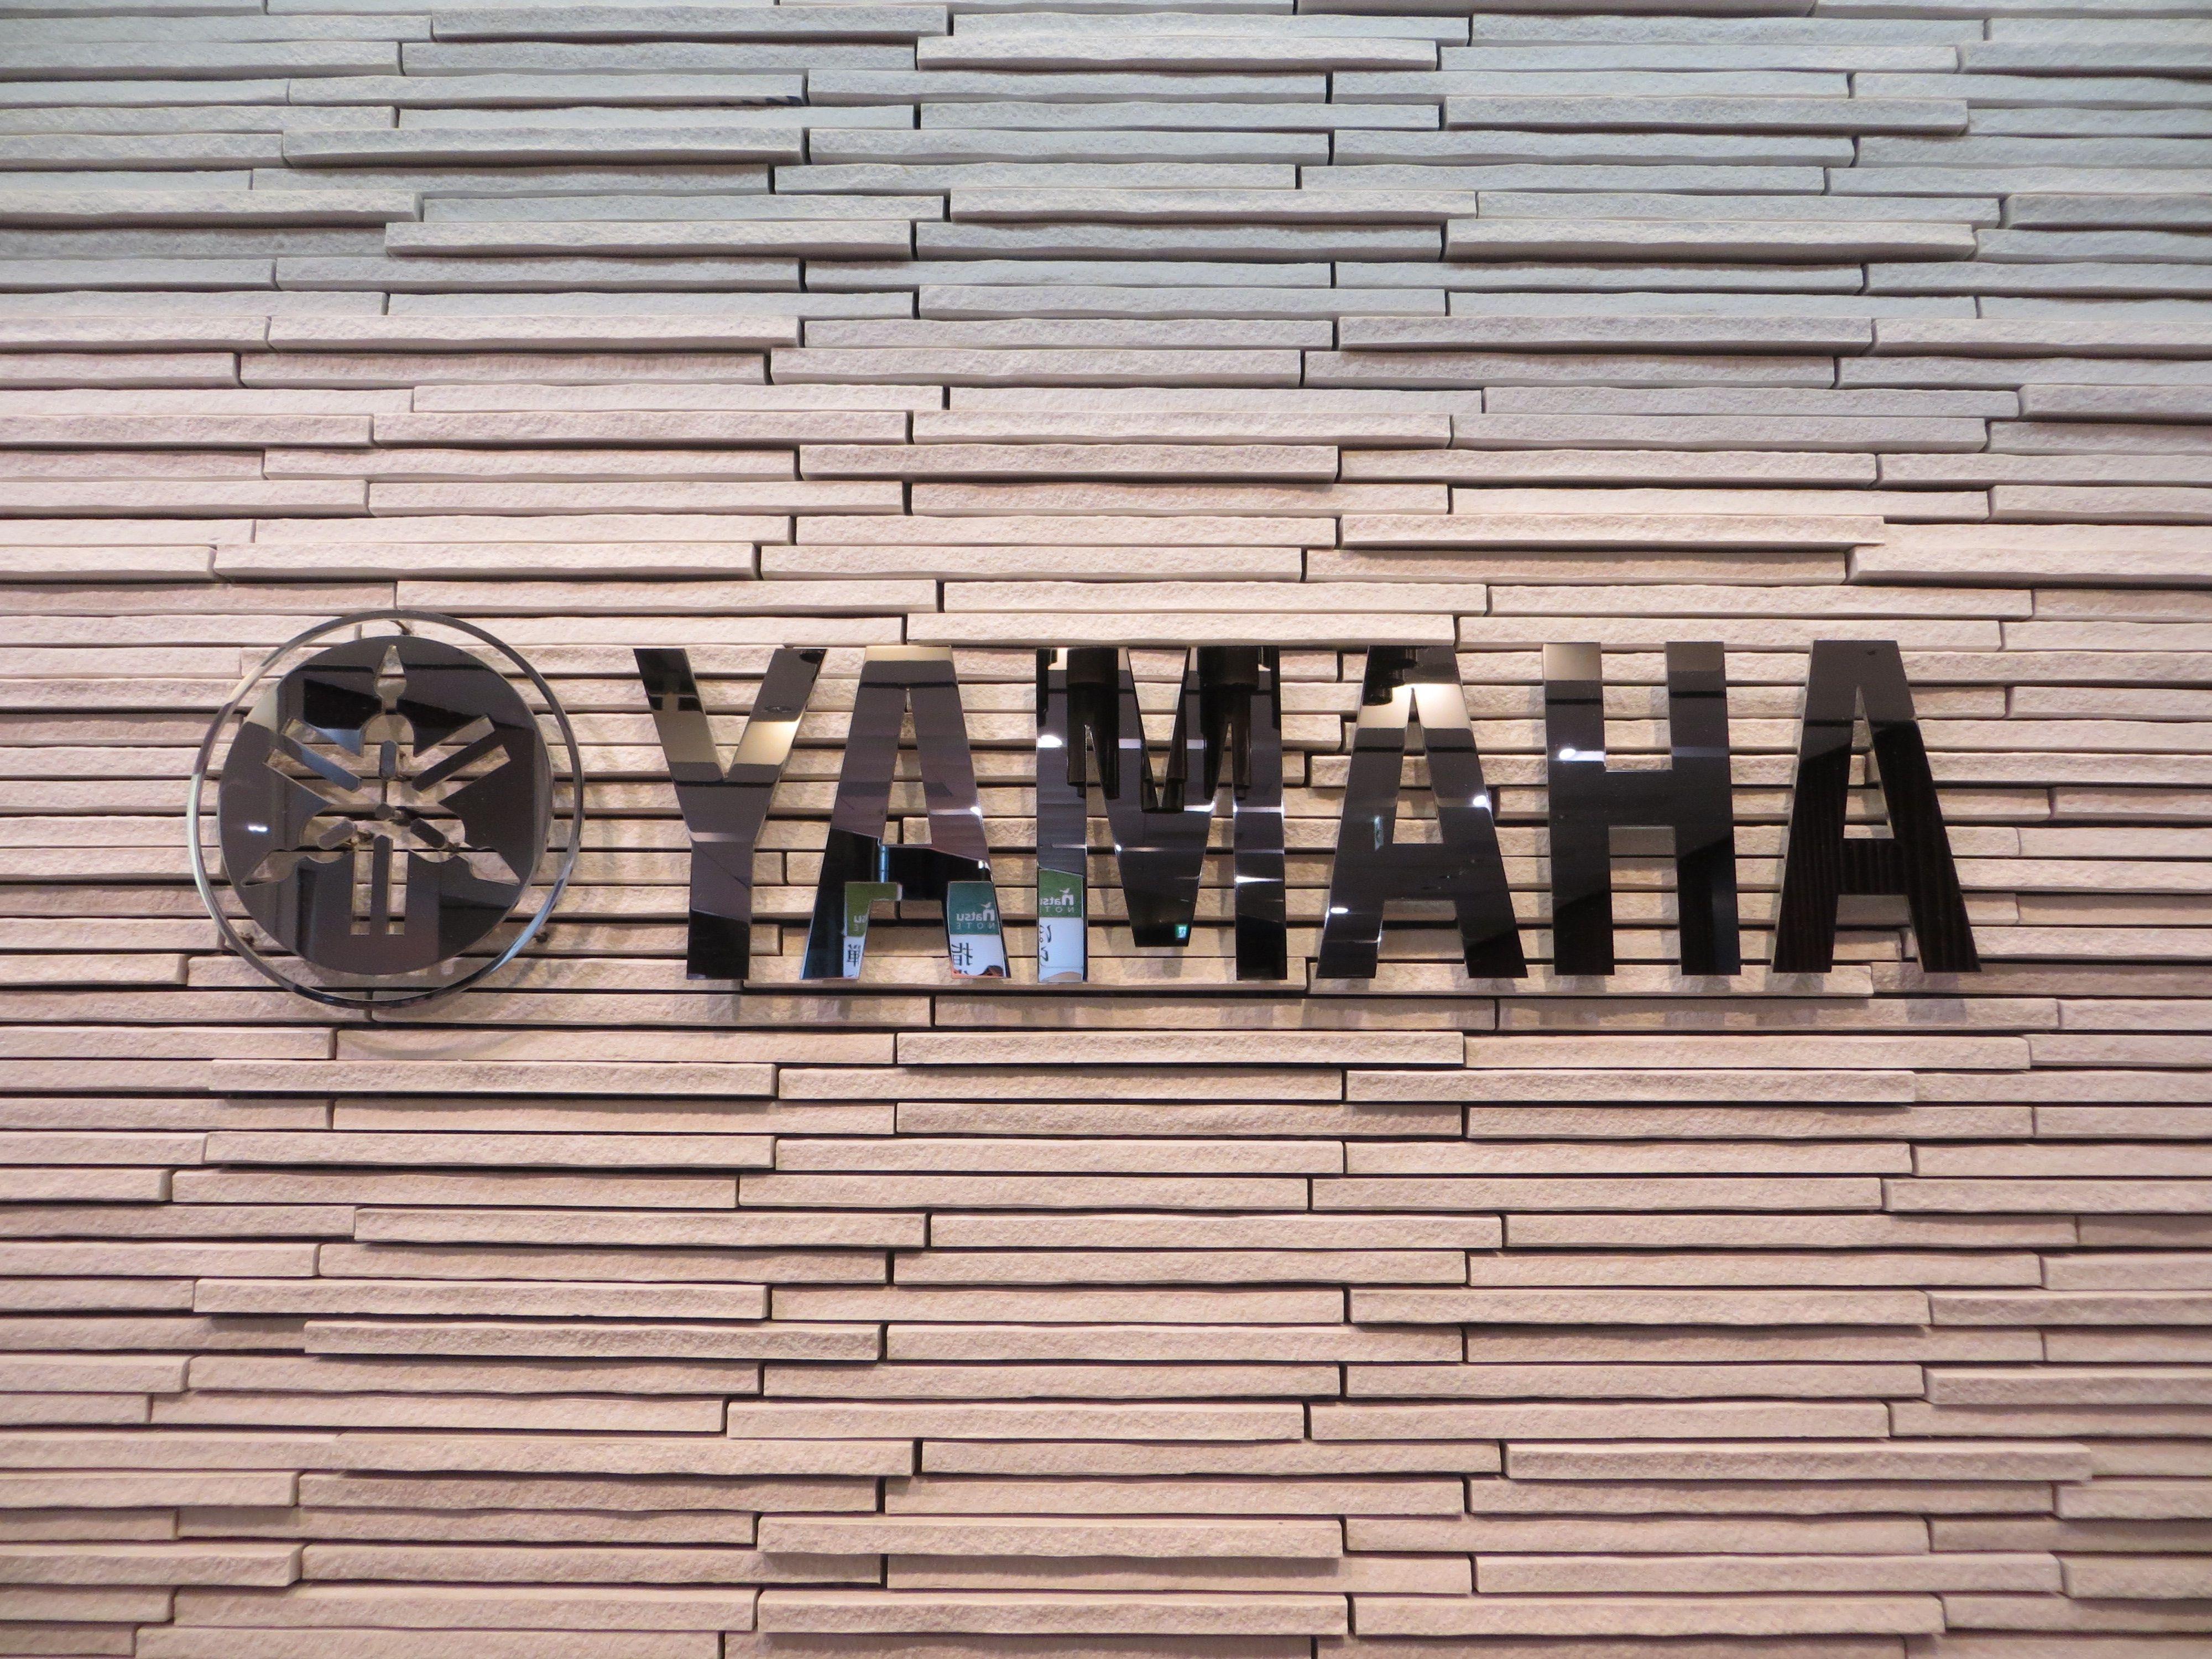 Wood Yamaha Logo - Yamaha Logo At Yamaha Ginza 2015 06 16 11.26.09 By Franklin